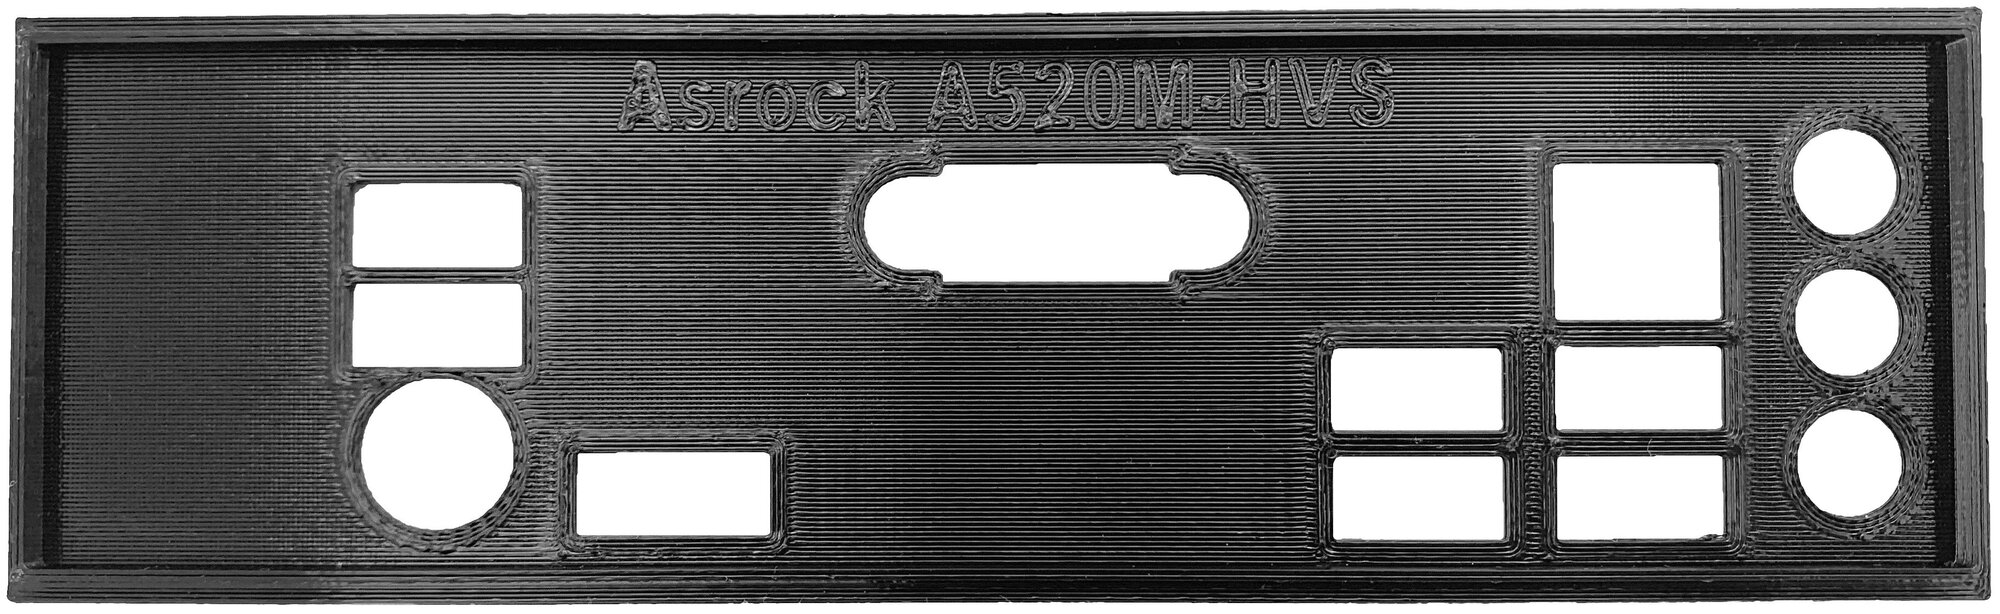 Заглушка для компьютерного корпуса к материнской плате Asrock A520M-HVS black